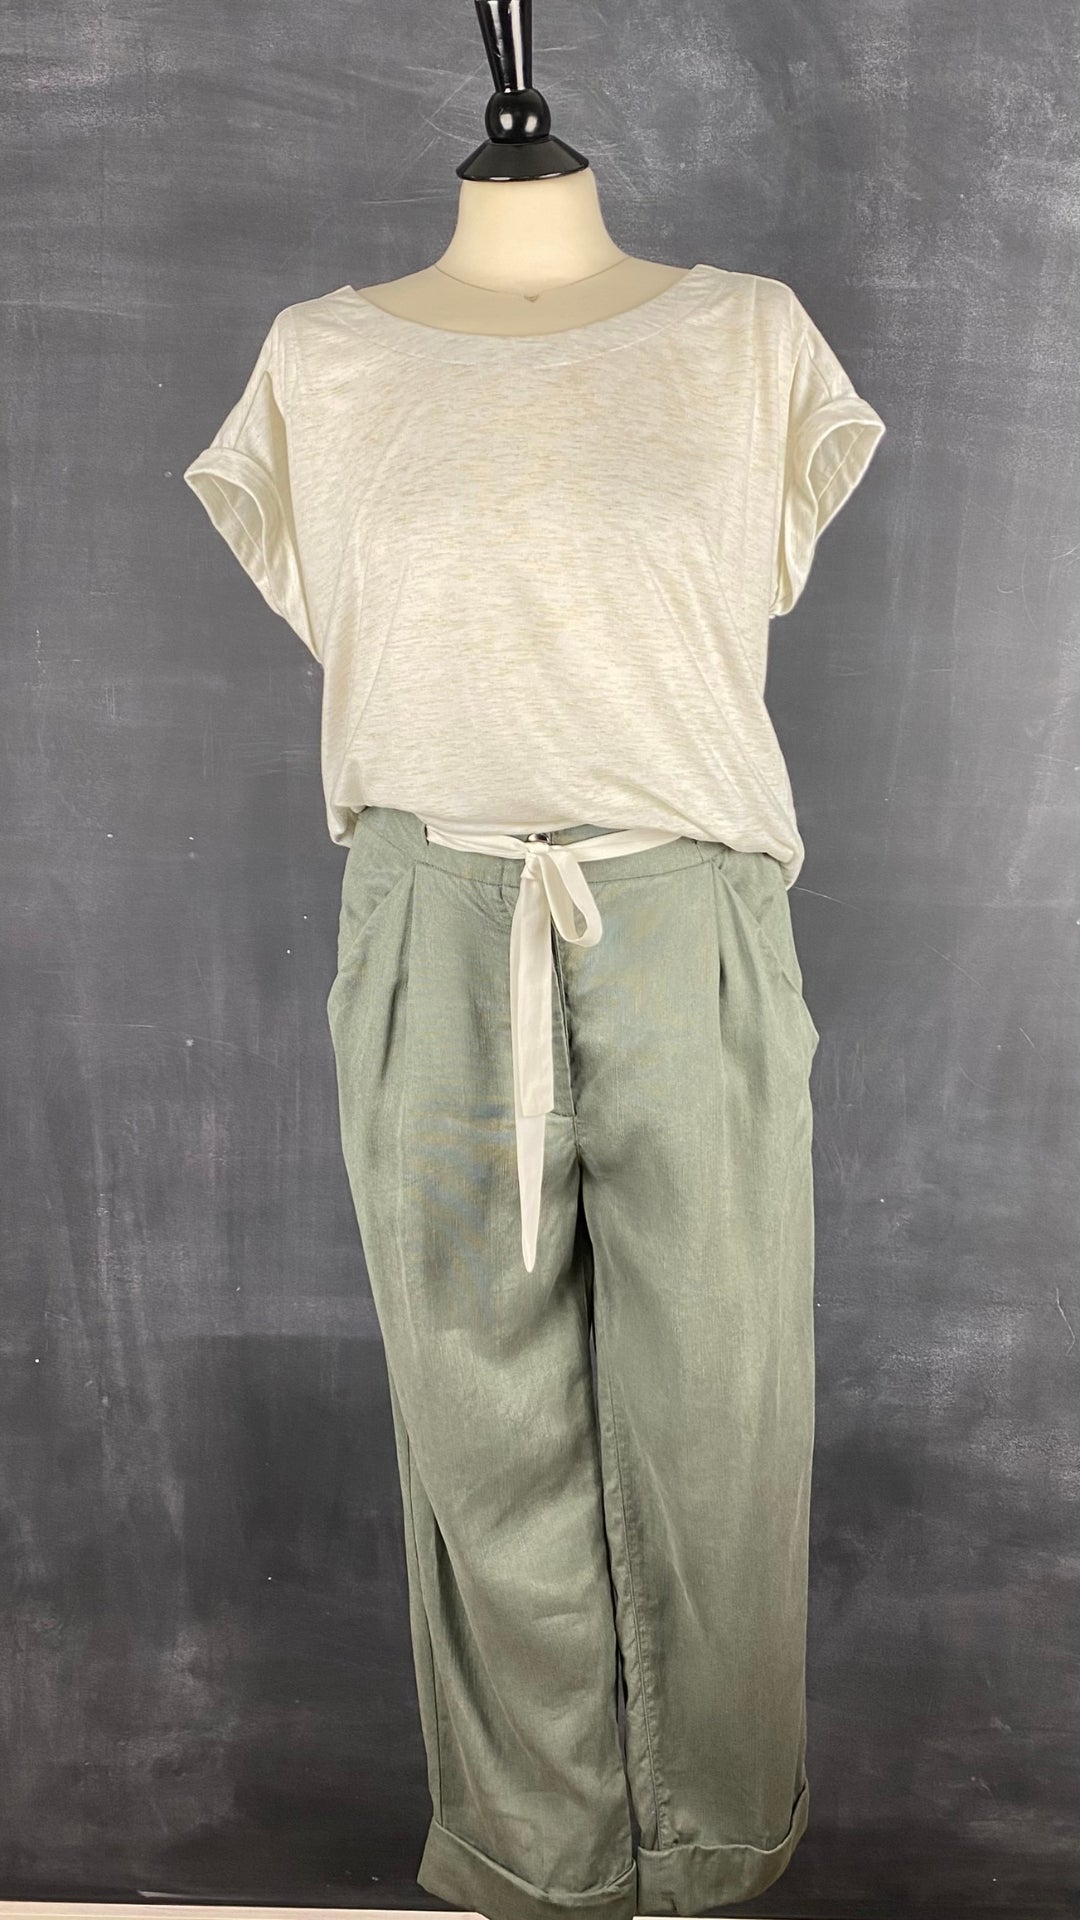 Pantalon vert en lyocell et lin Wilfred, taille 8. Vue de l'agencement avec le chandail crème et doré ample.